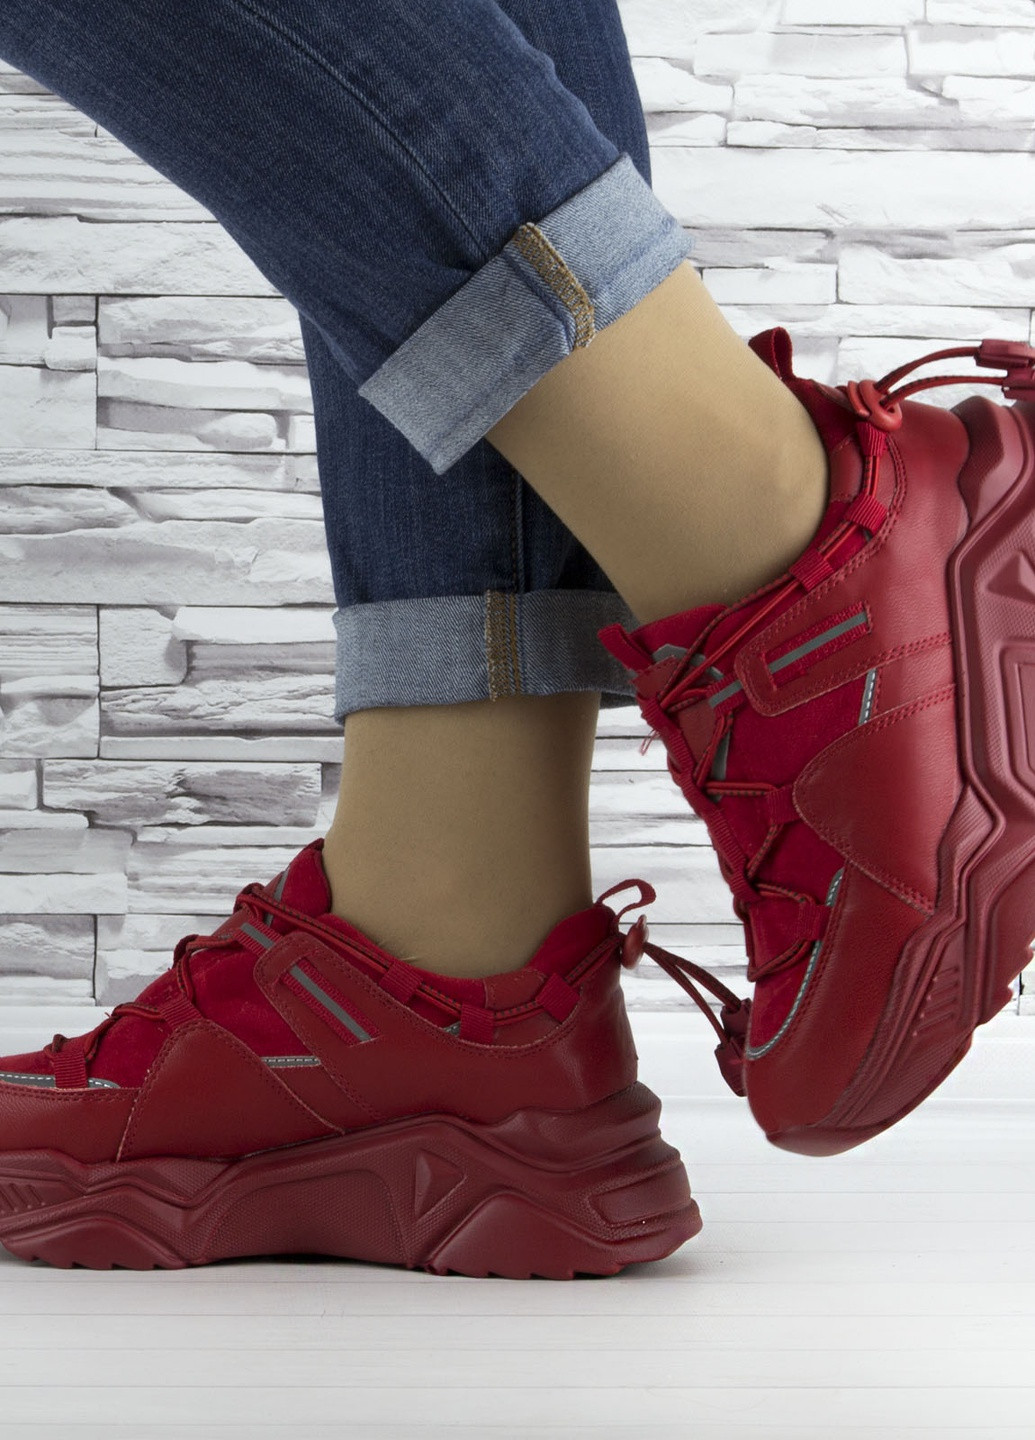 Червоні осінні кросівки жіночі червоні на шнурках і високій підошві комбіновані Stilli